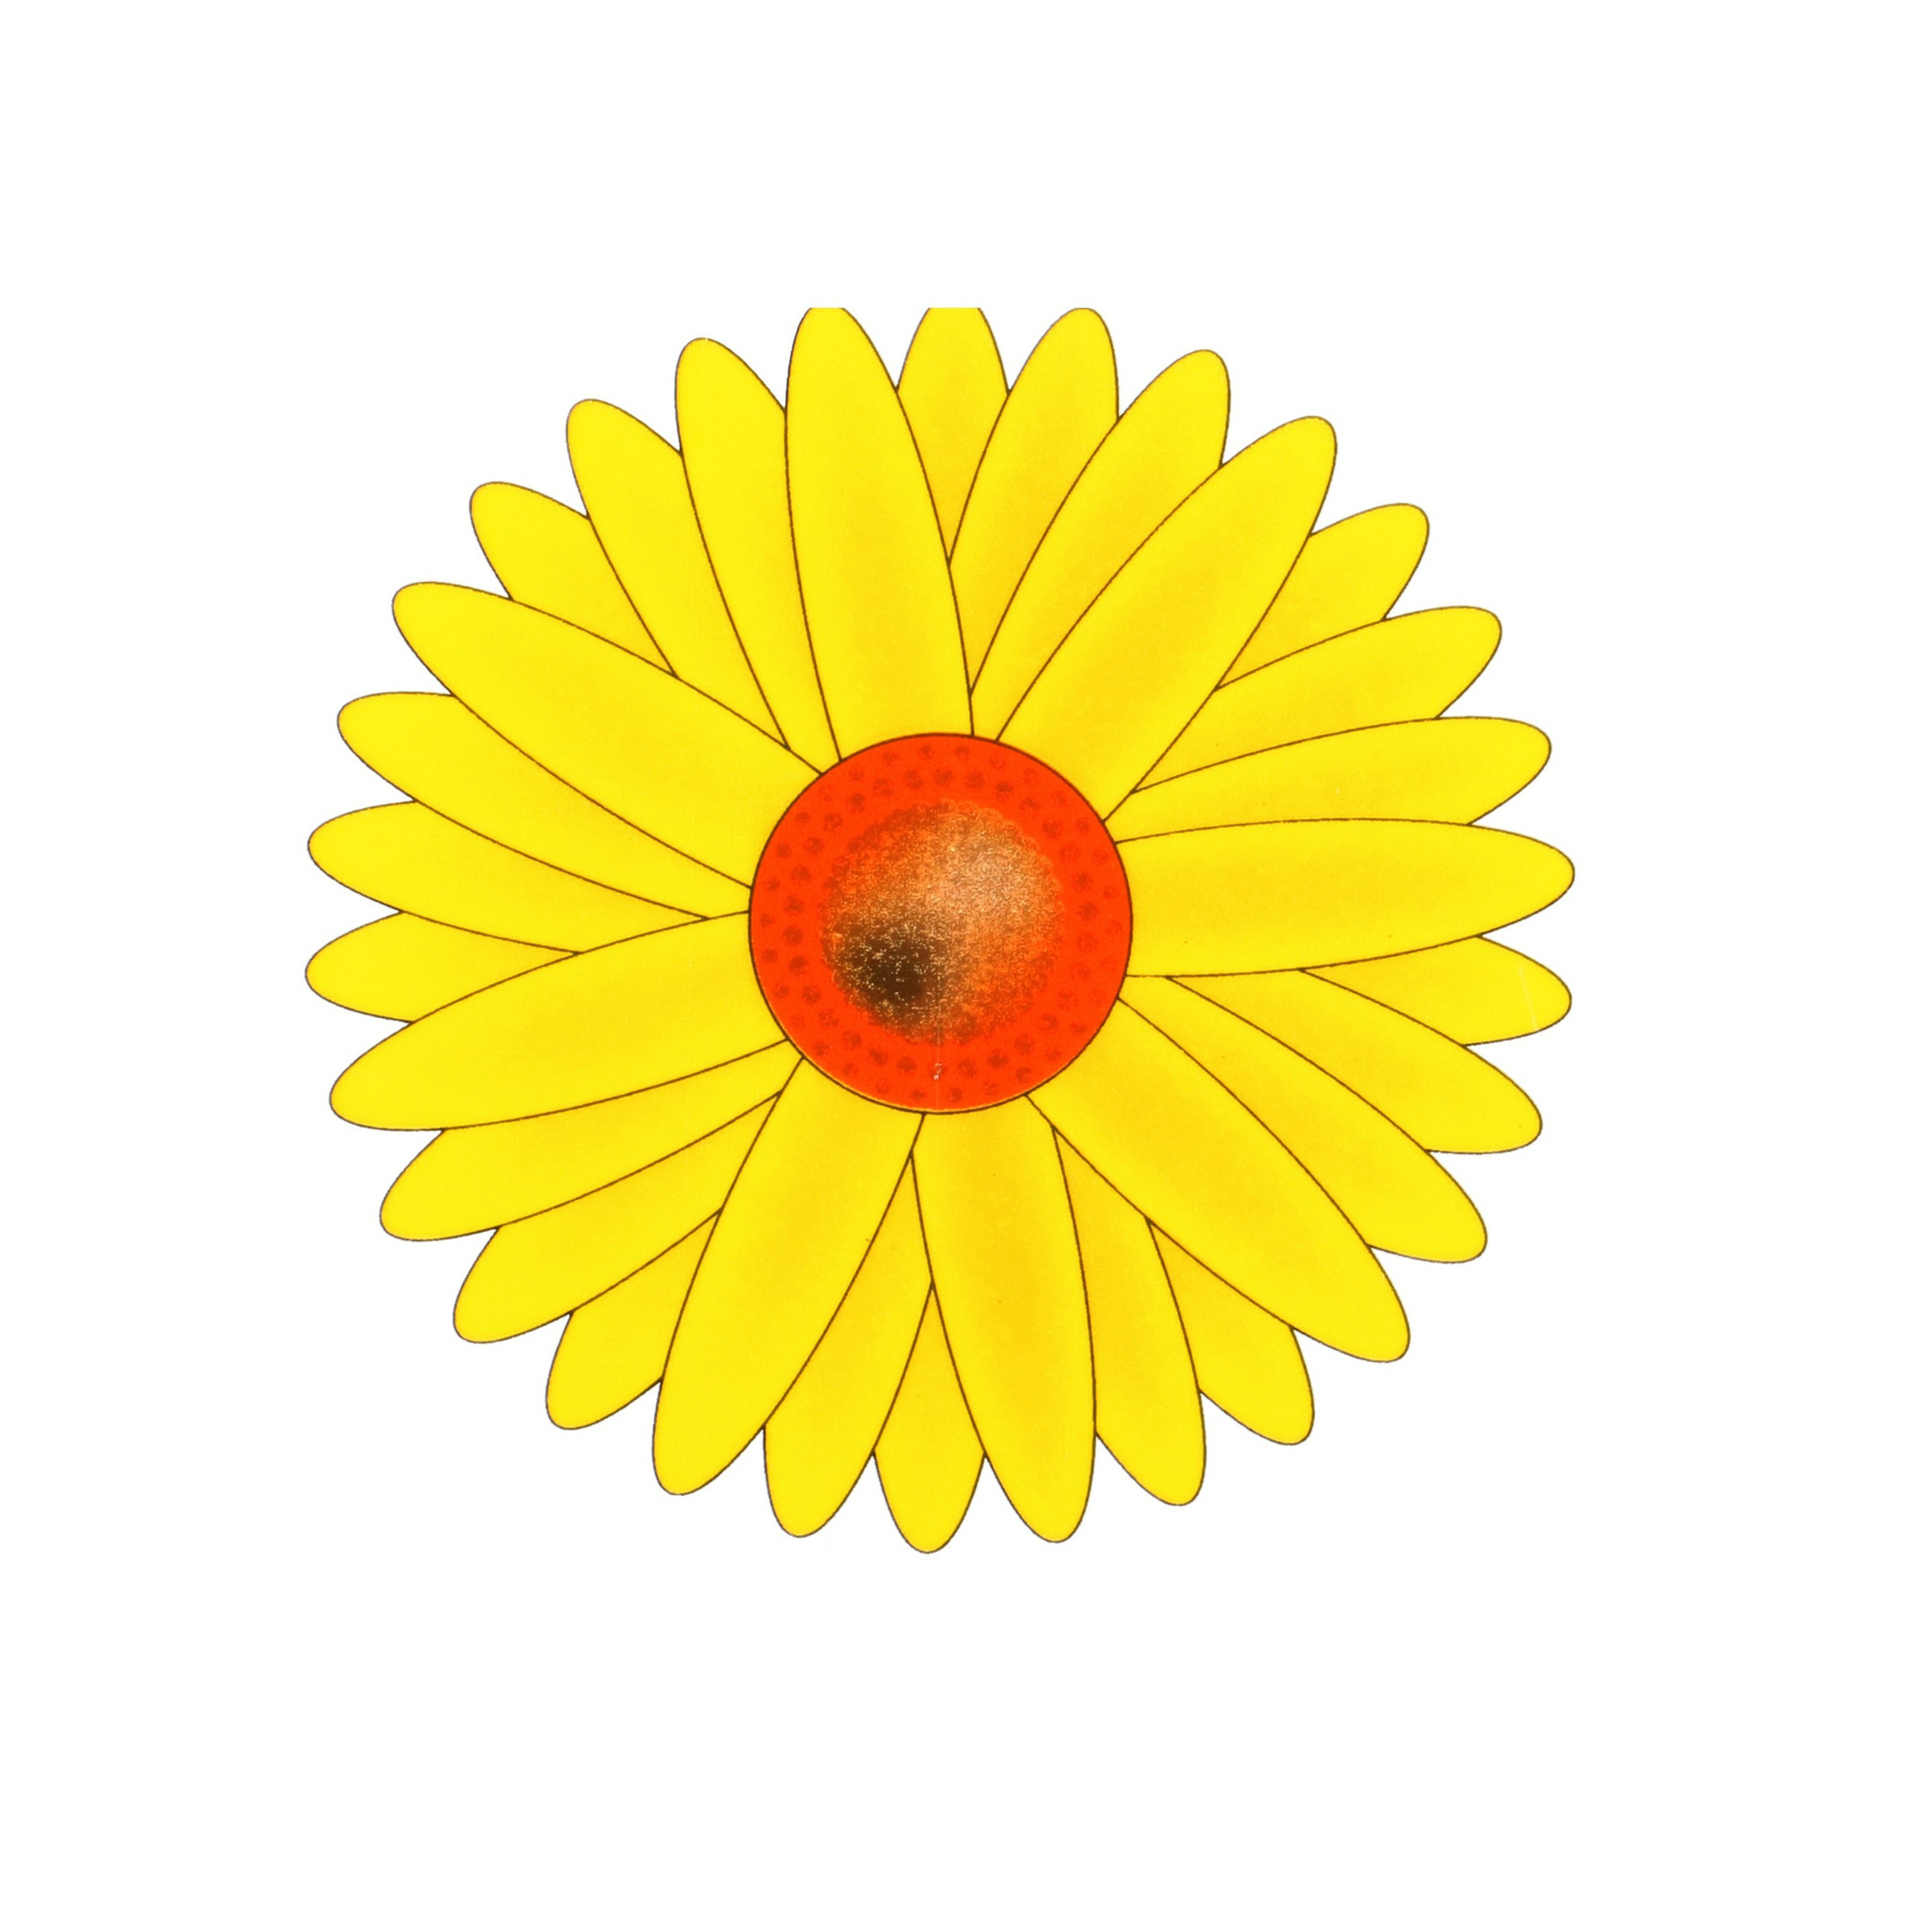 Fruitvliegjes val zonnebloem raamsticker 3x stickers geel diameter 8,5 cm